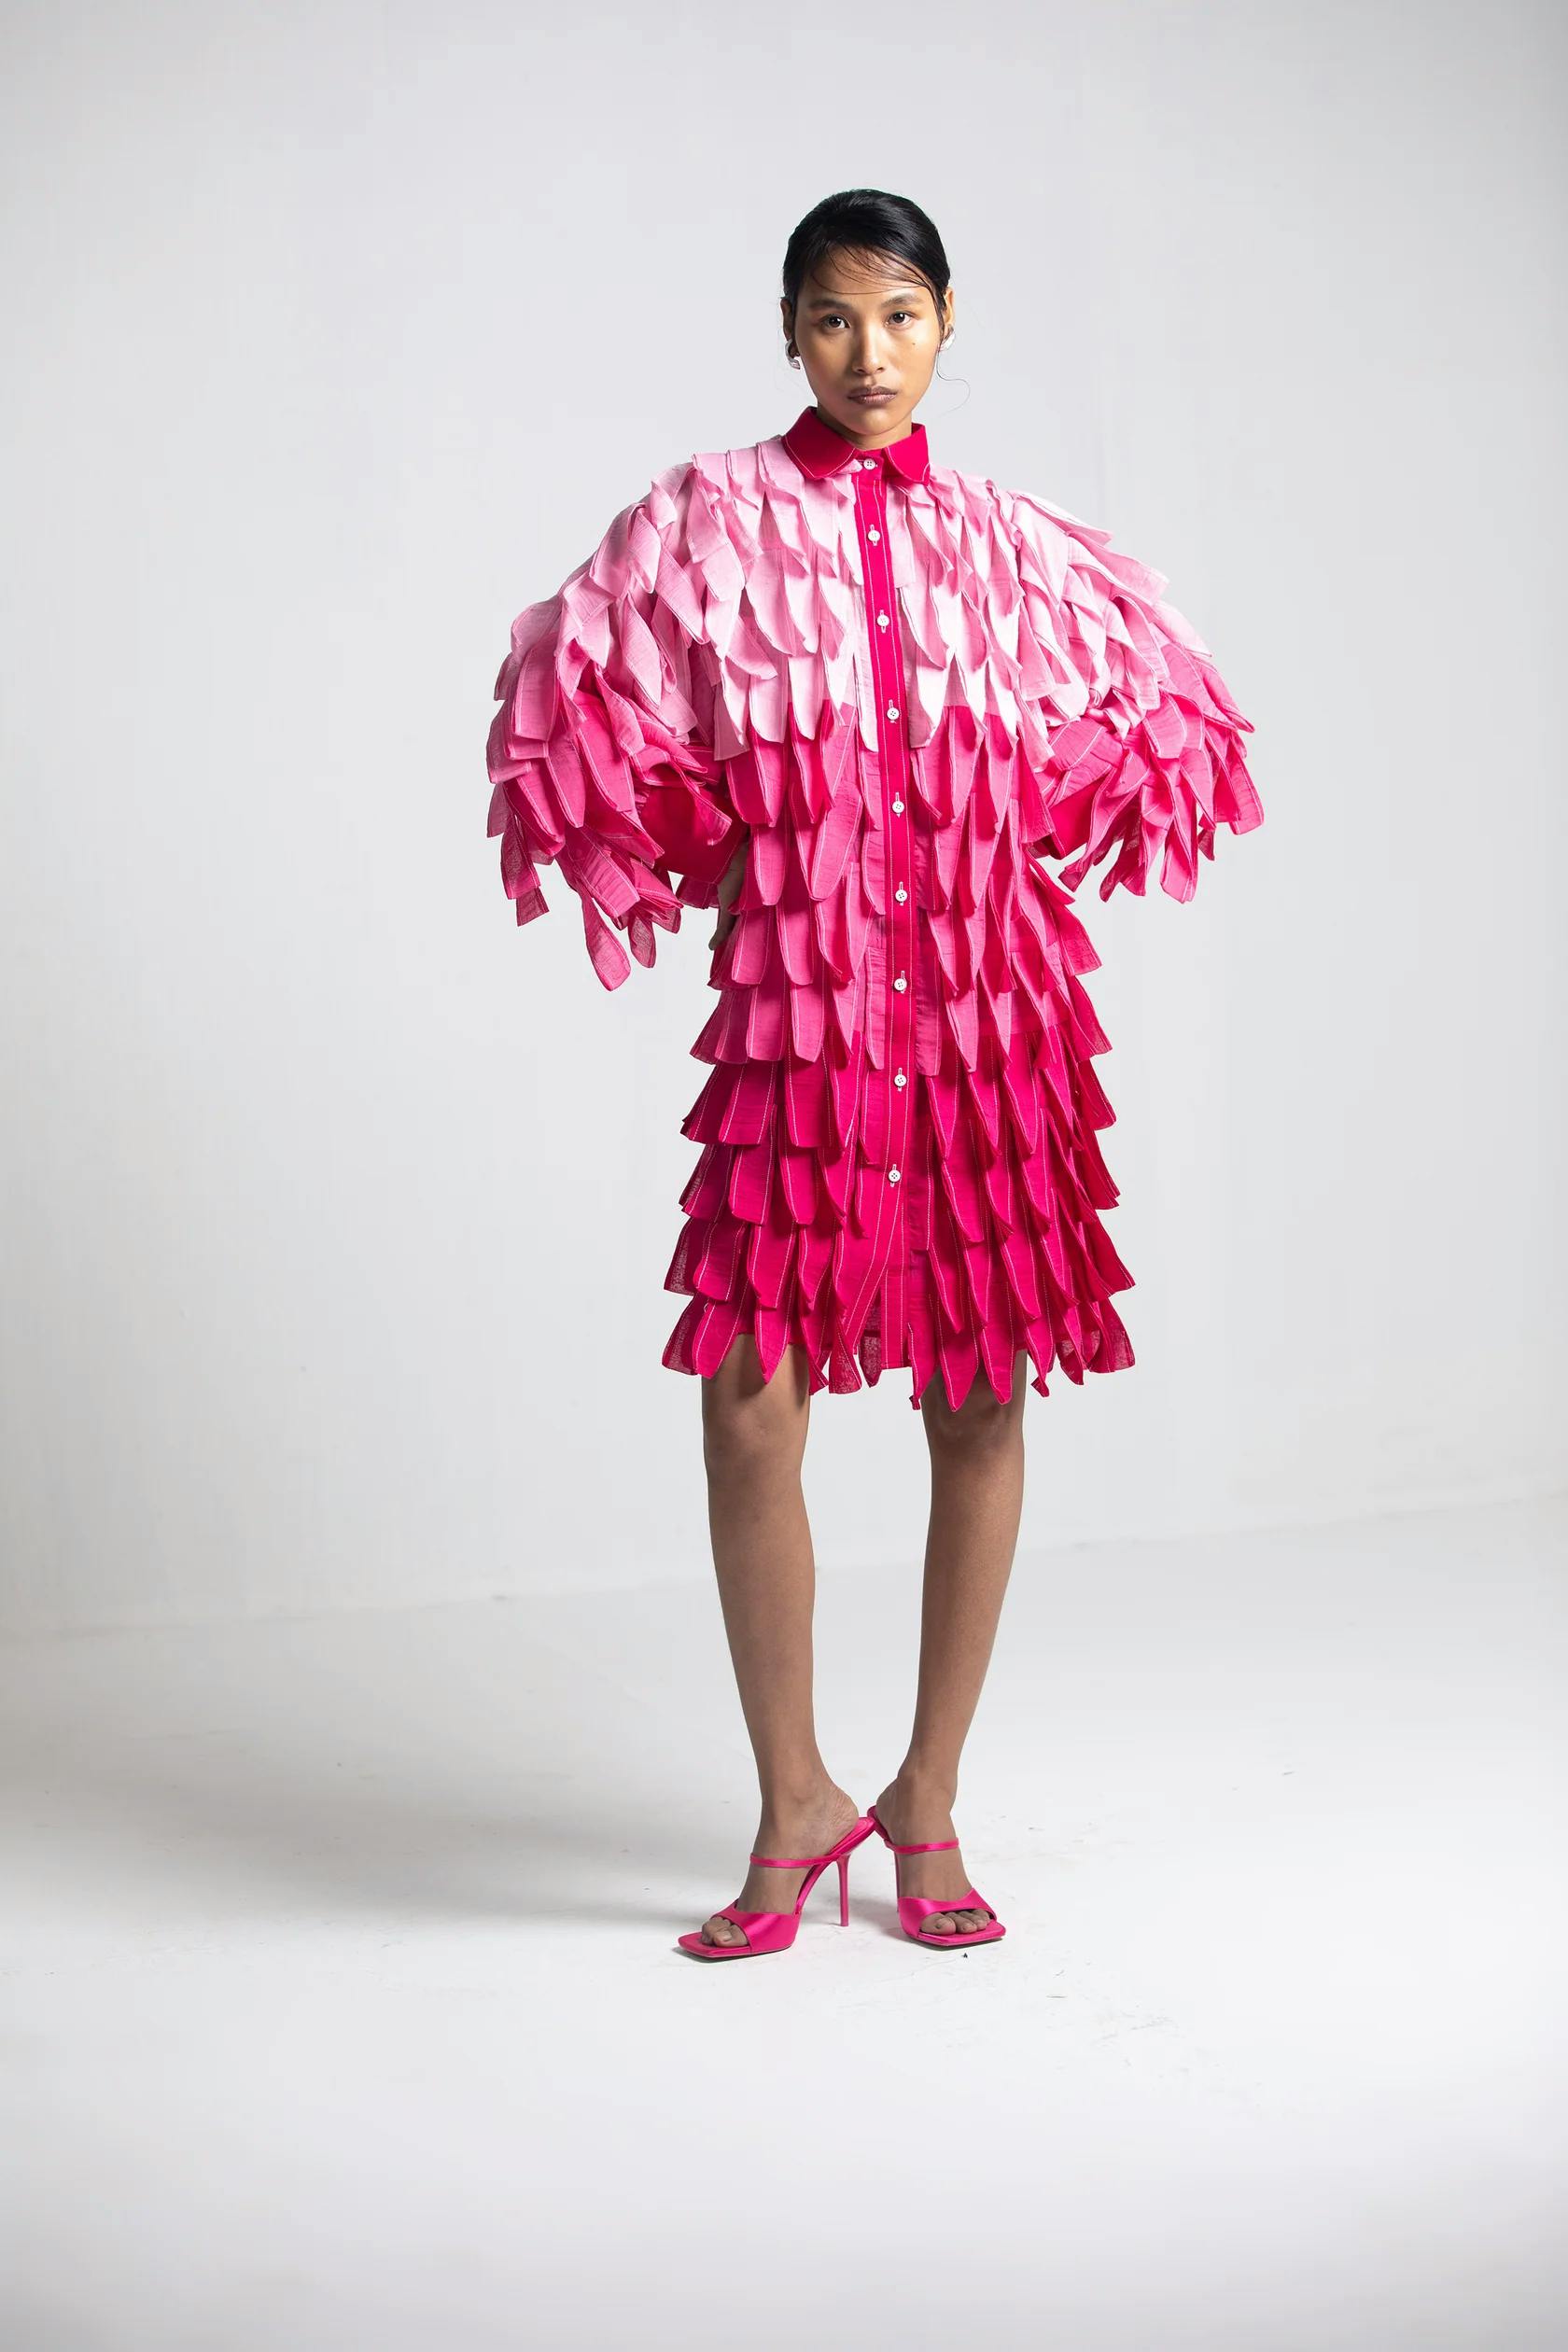 Boxy ombré Petal dress, a product by Corpora Studio